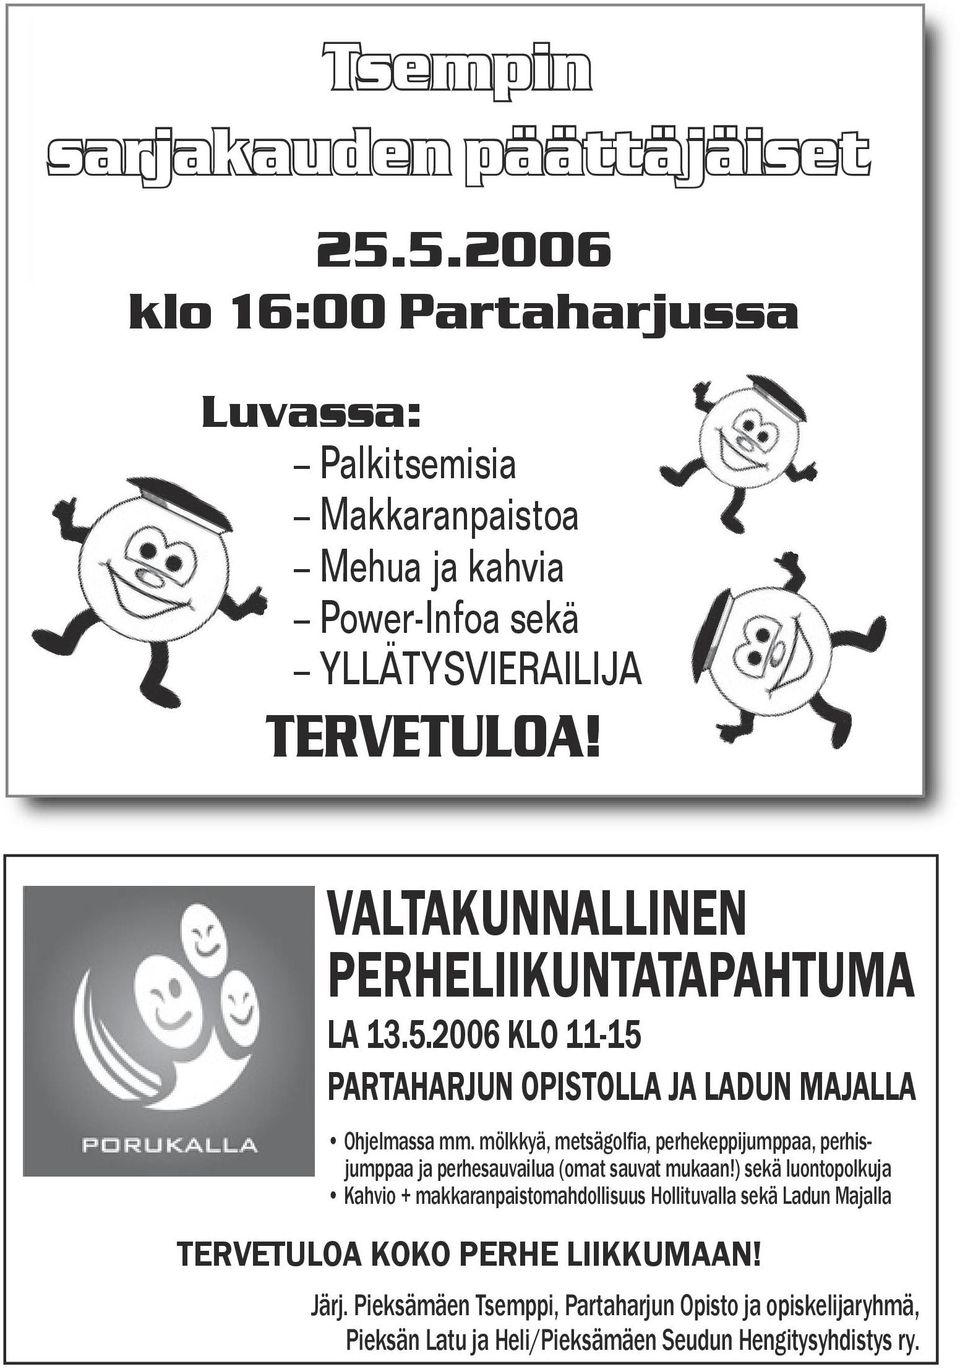 VALTAKUNNALLINEN PERHELIIKUNTATAPAHTUMA LA 13.5.2006 KLO 11-15 PARTAHARJUN OPISTOLLA JA LADUN MAJALLA Ohjelmassa mm.